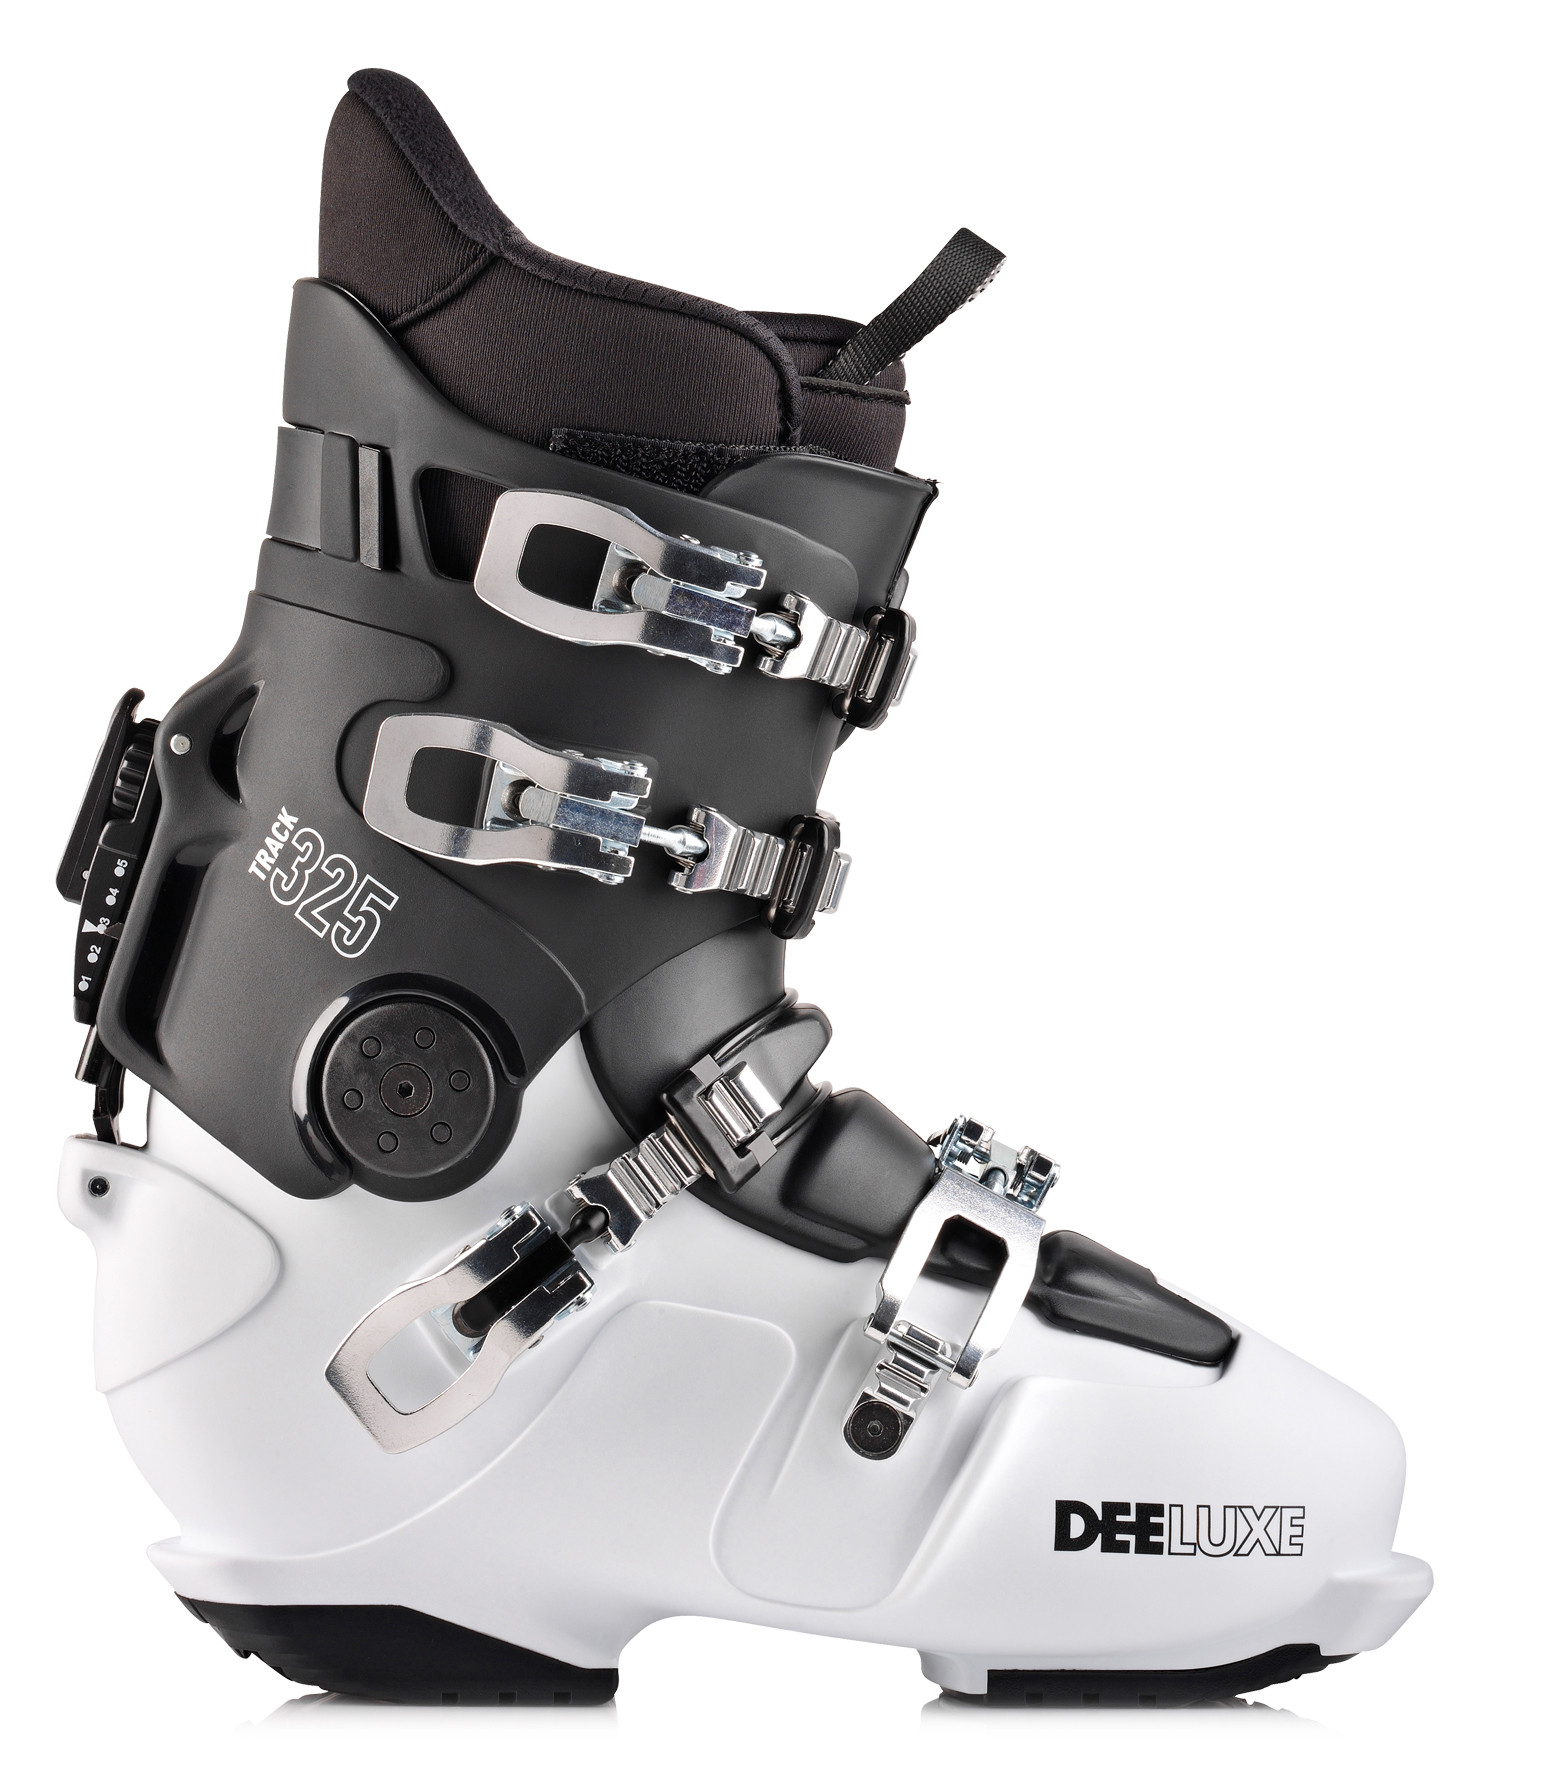 Voorspeller reservering geleidelijk Deeluxe Track 325 black-white | Donek.com Custom Snowboards